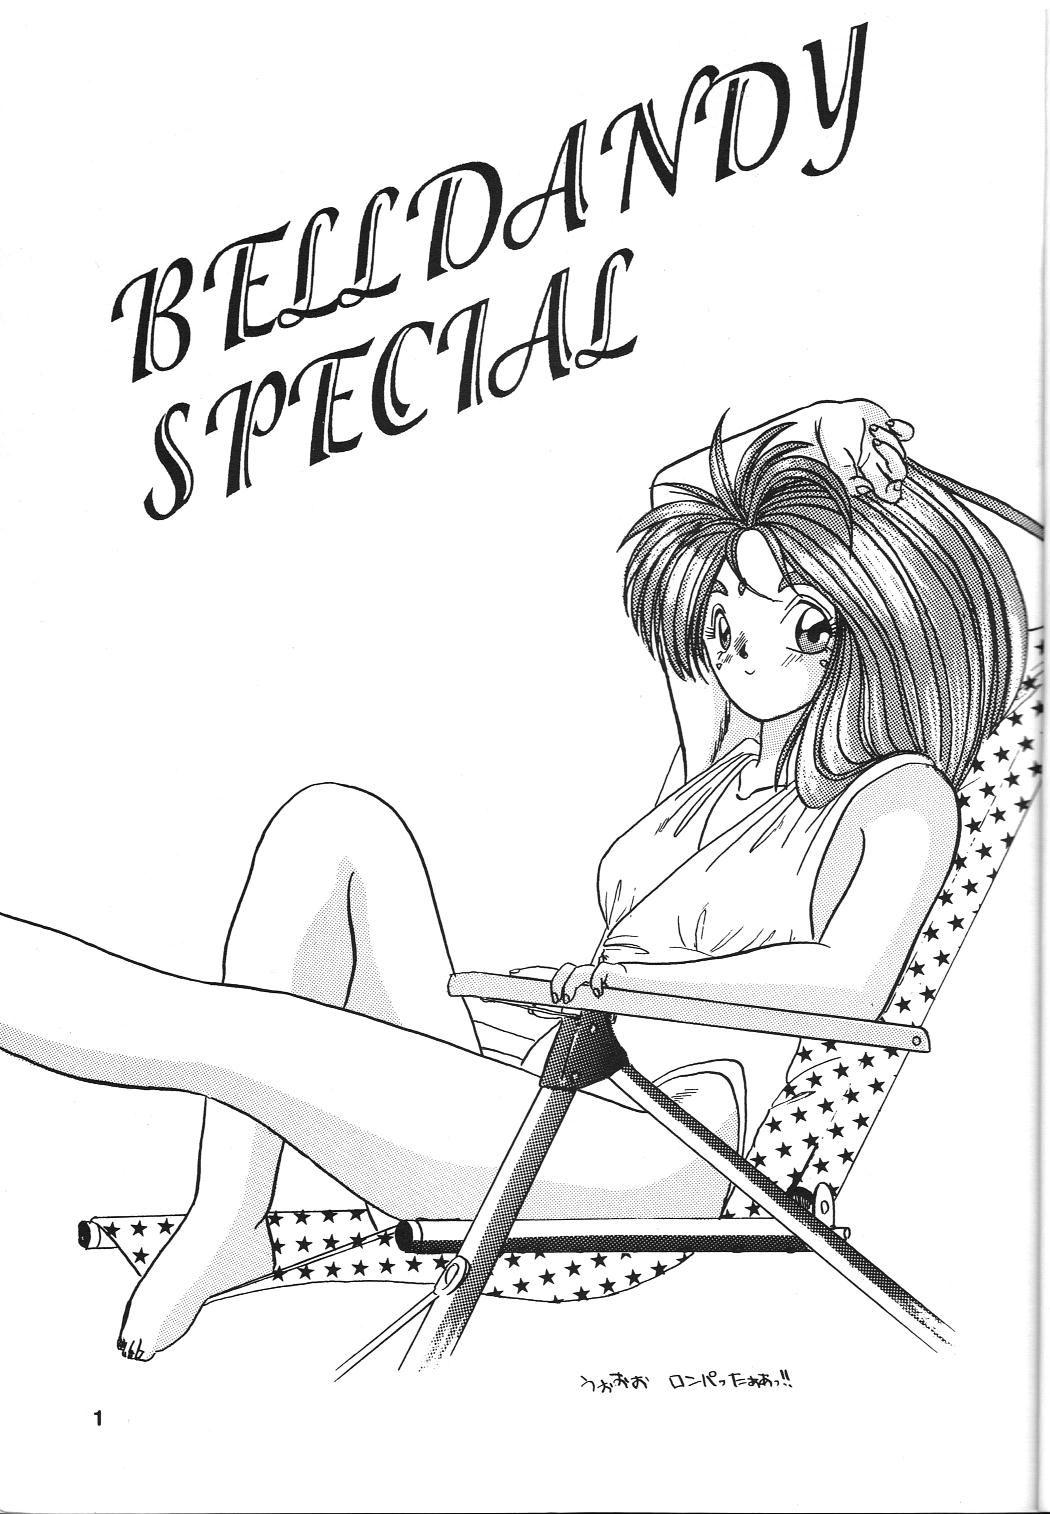 Belldandy Special 1